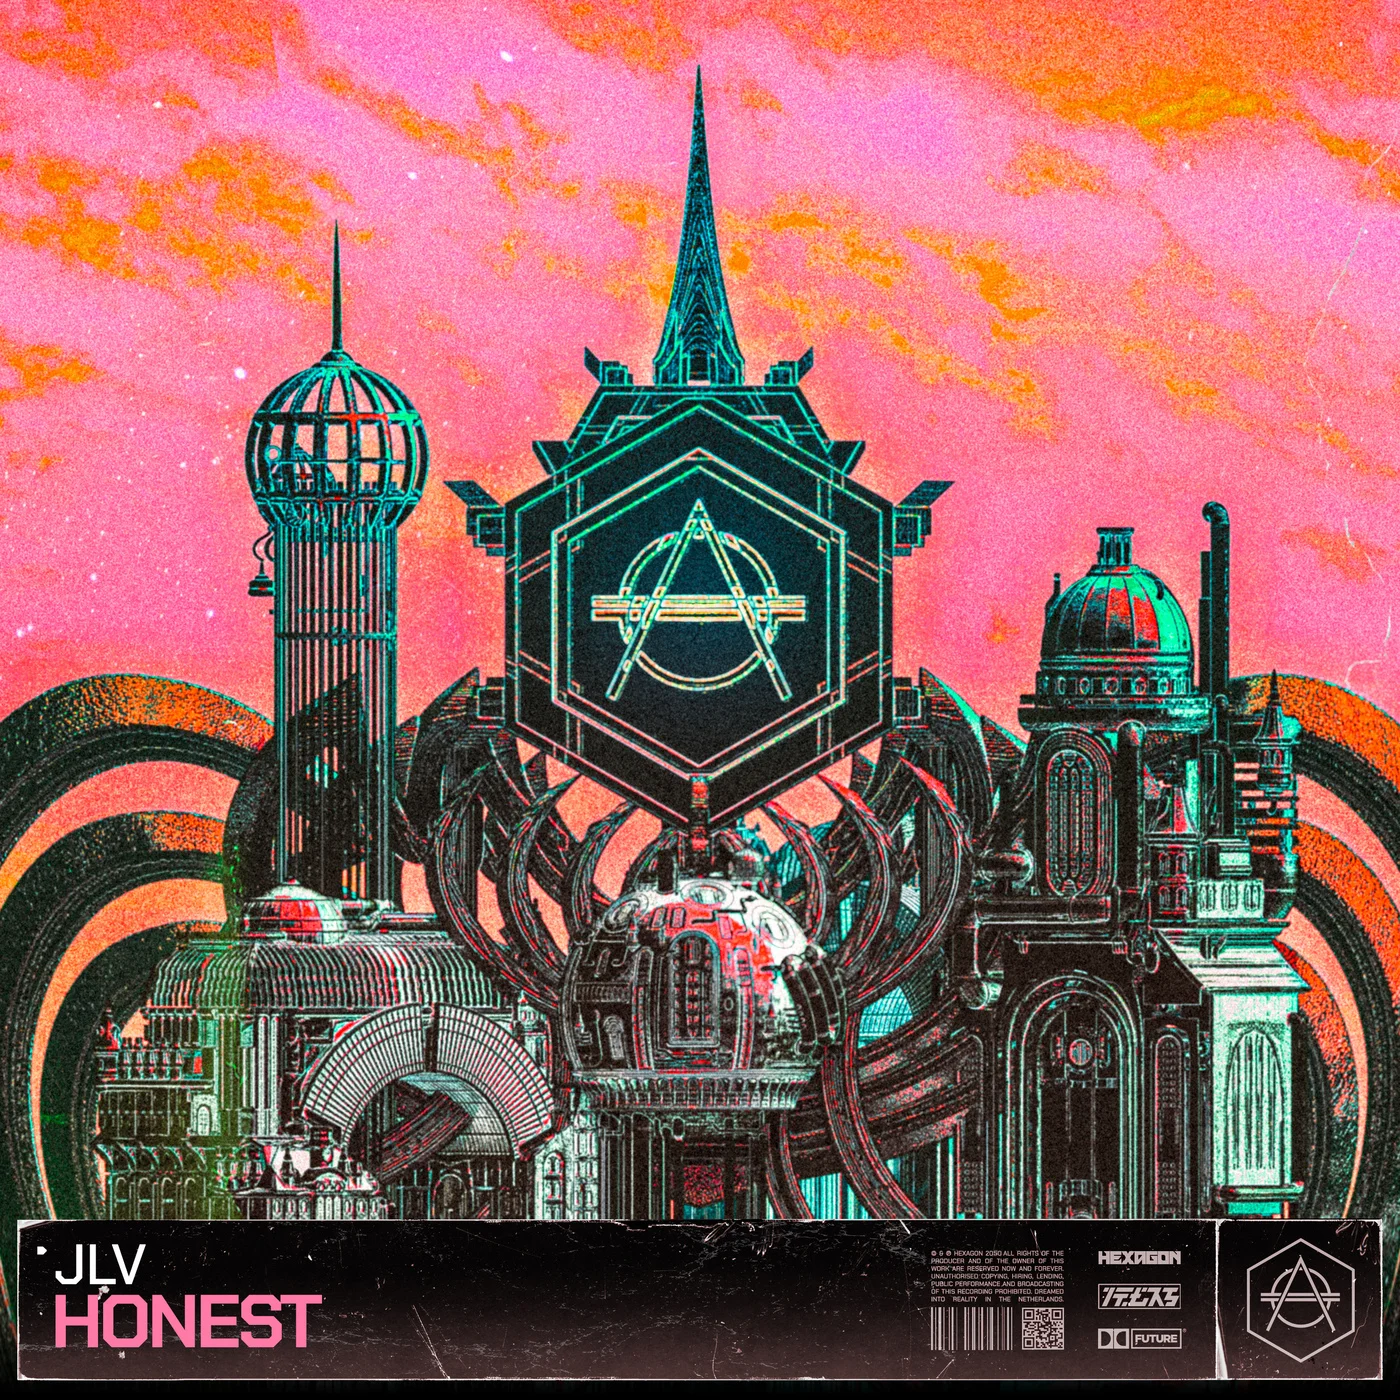 JLV — Honest cover artwork